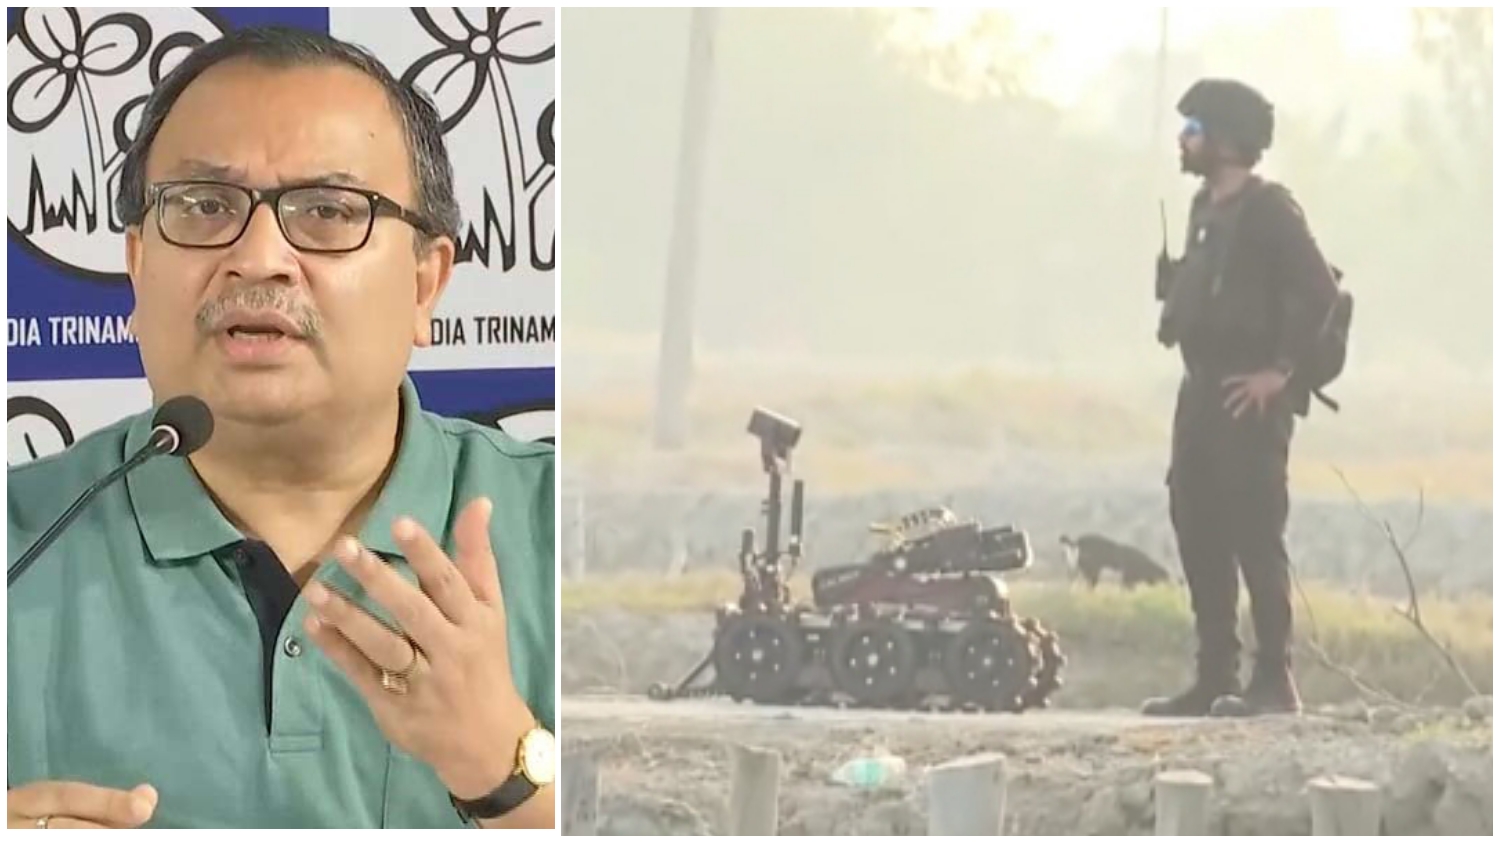 Kunal Ghosh: সাজানো নাটক! সন্দেশখালিতে এনএসজি তল্লাশি সম্পর্কে কী দাবি কুণালের?